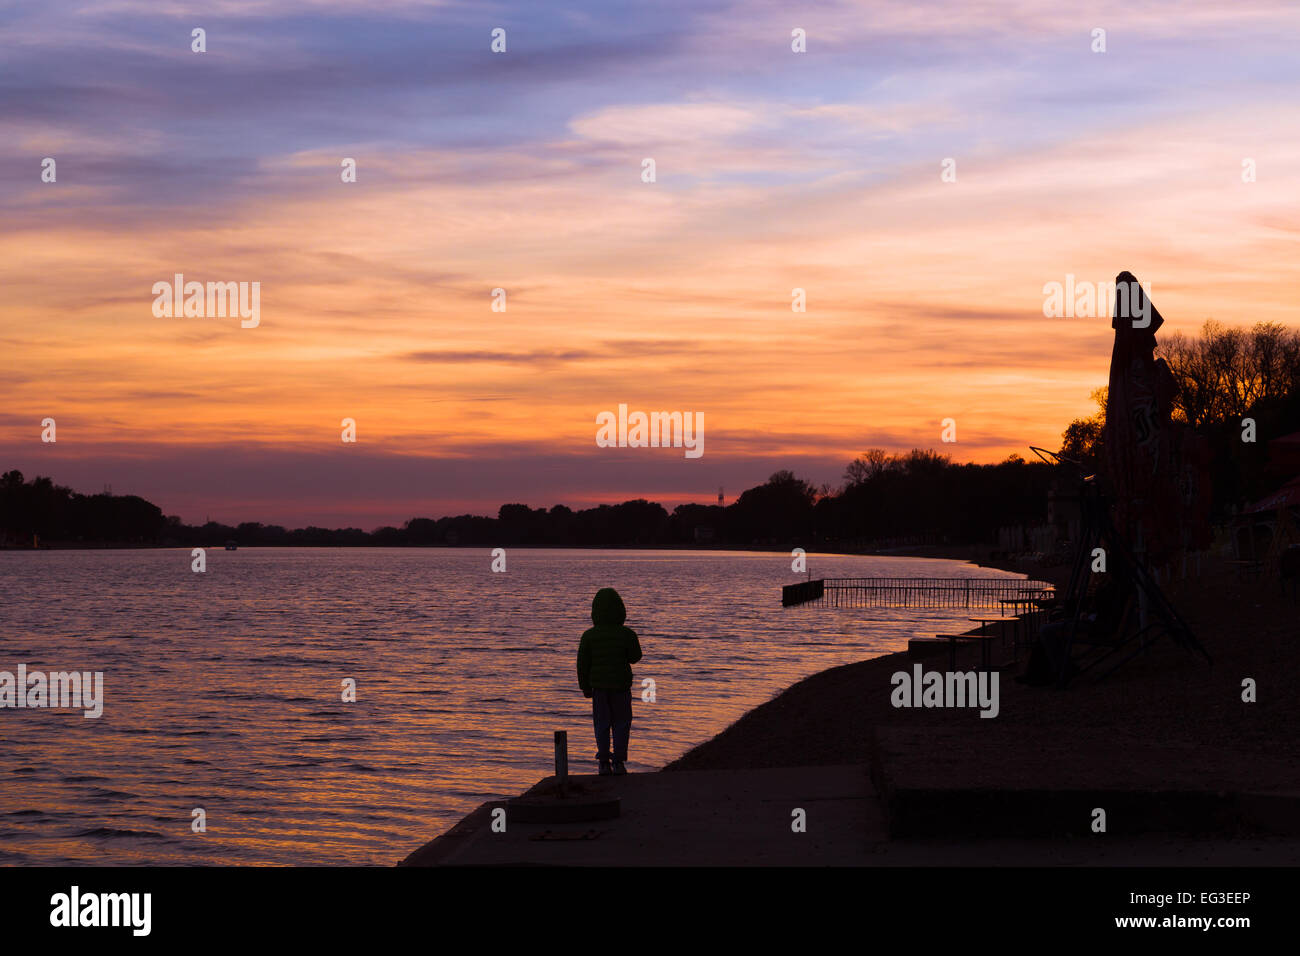 Sonnenuntergang fällt auf dem See bei Ada Ciganlija in Belgrad Serbien. ein Kind blickt vom Ufer entfernt. Mehr Beograda oder Belgrads Meer Stockfoto